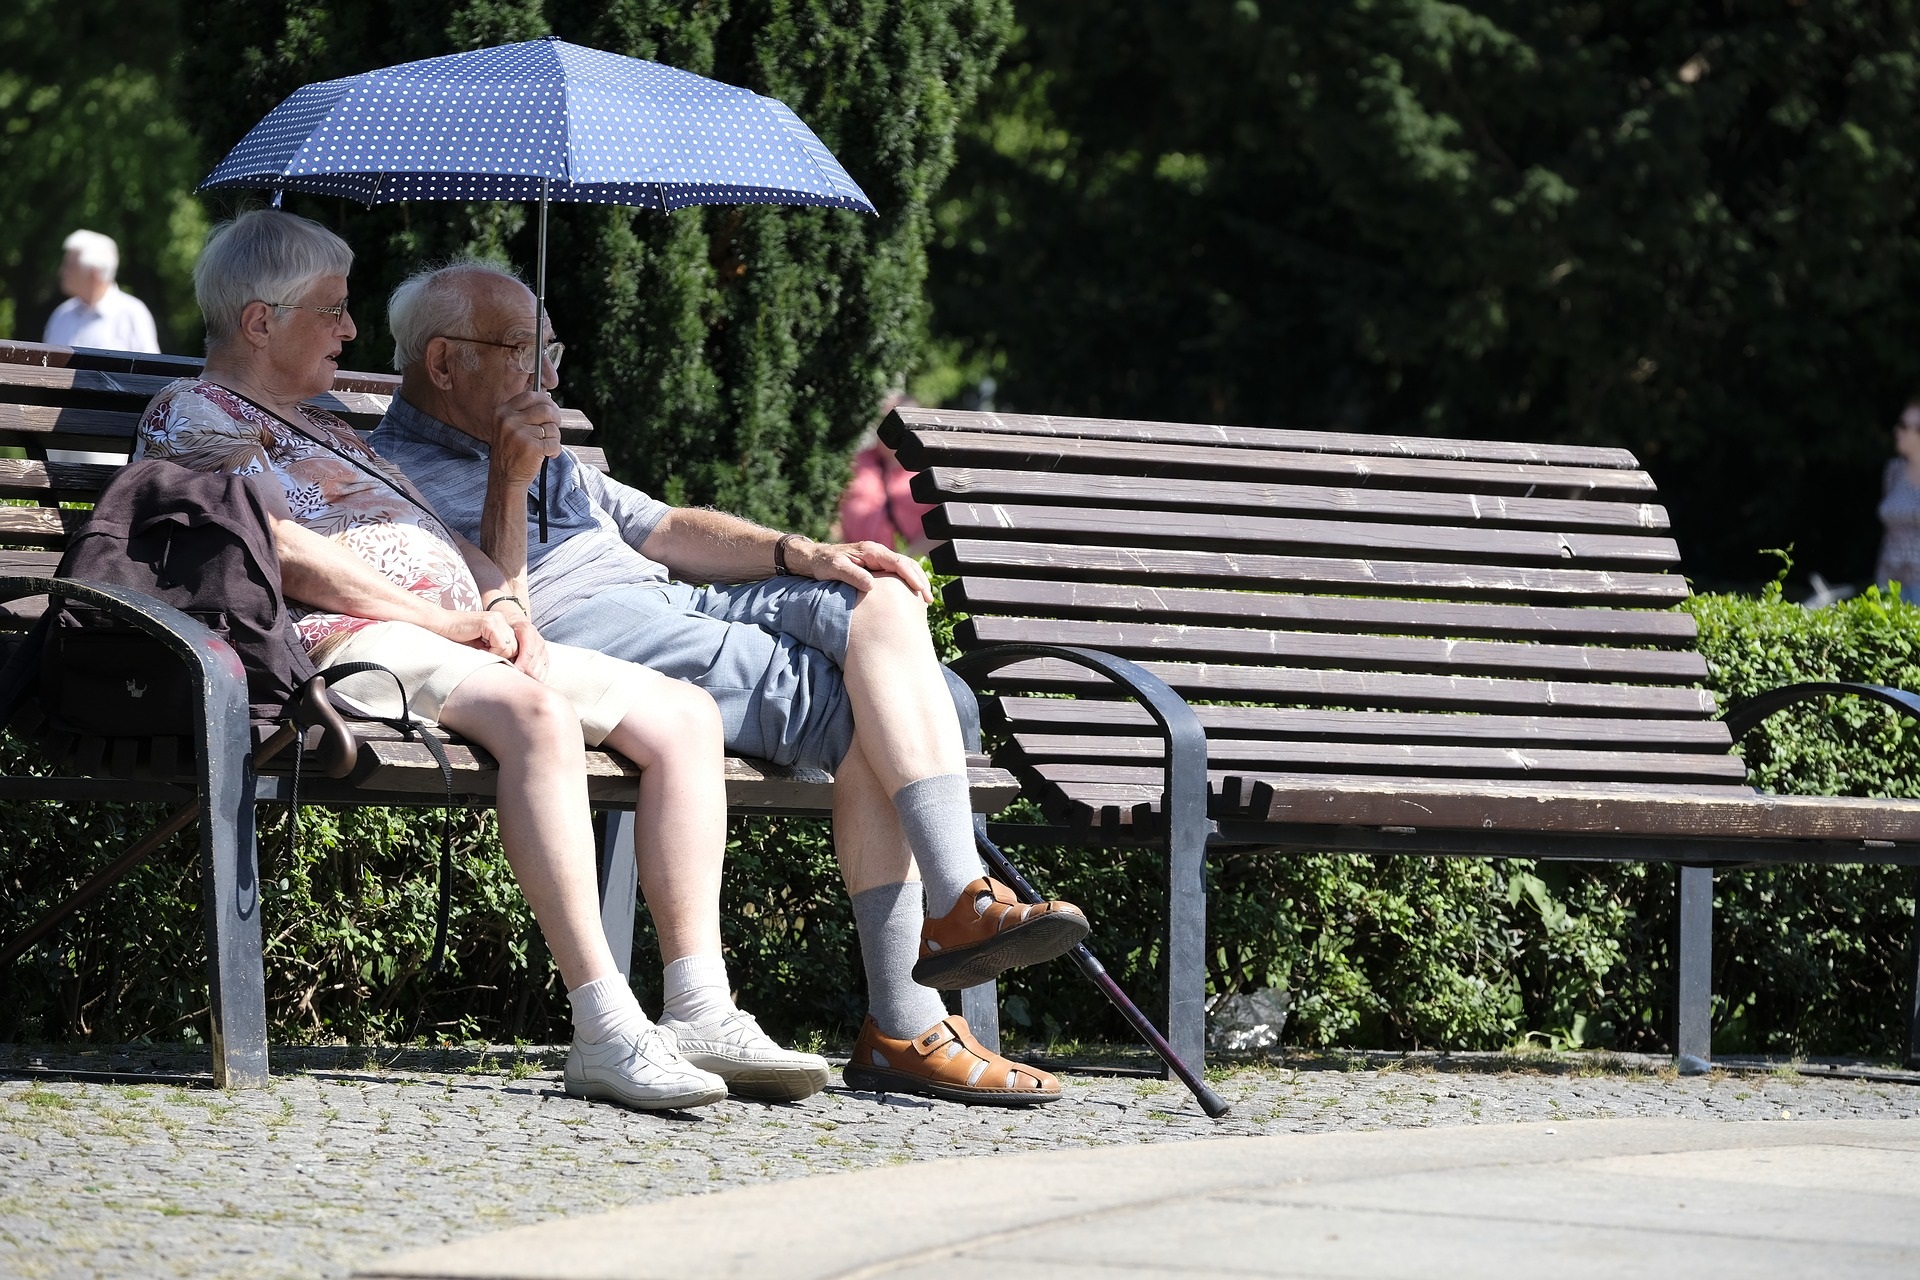 EIn altes Paar sitzt zusammen auf einer Bank mit einem Sonnenschirm in der Hand